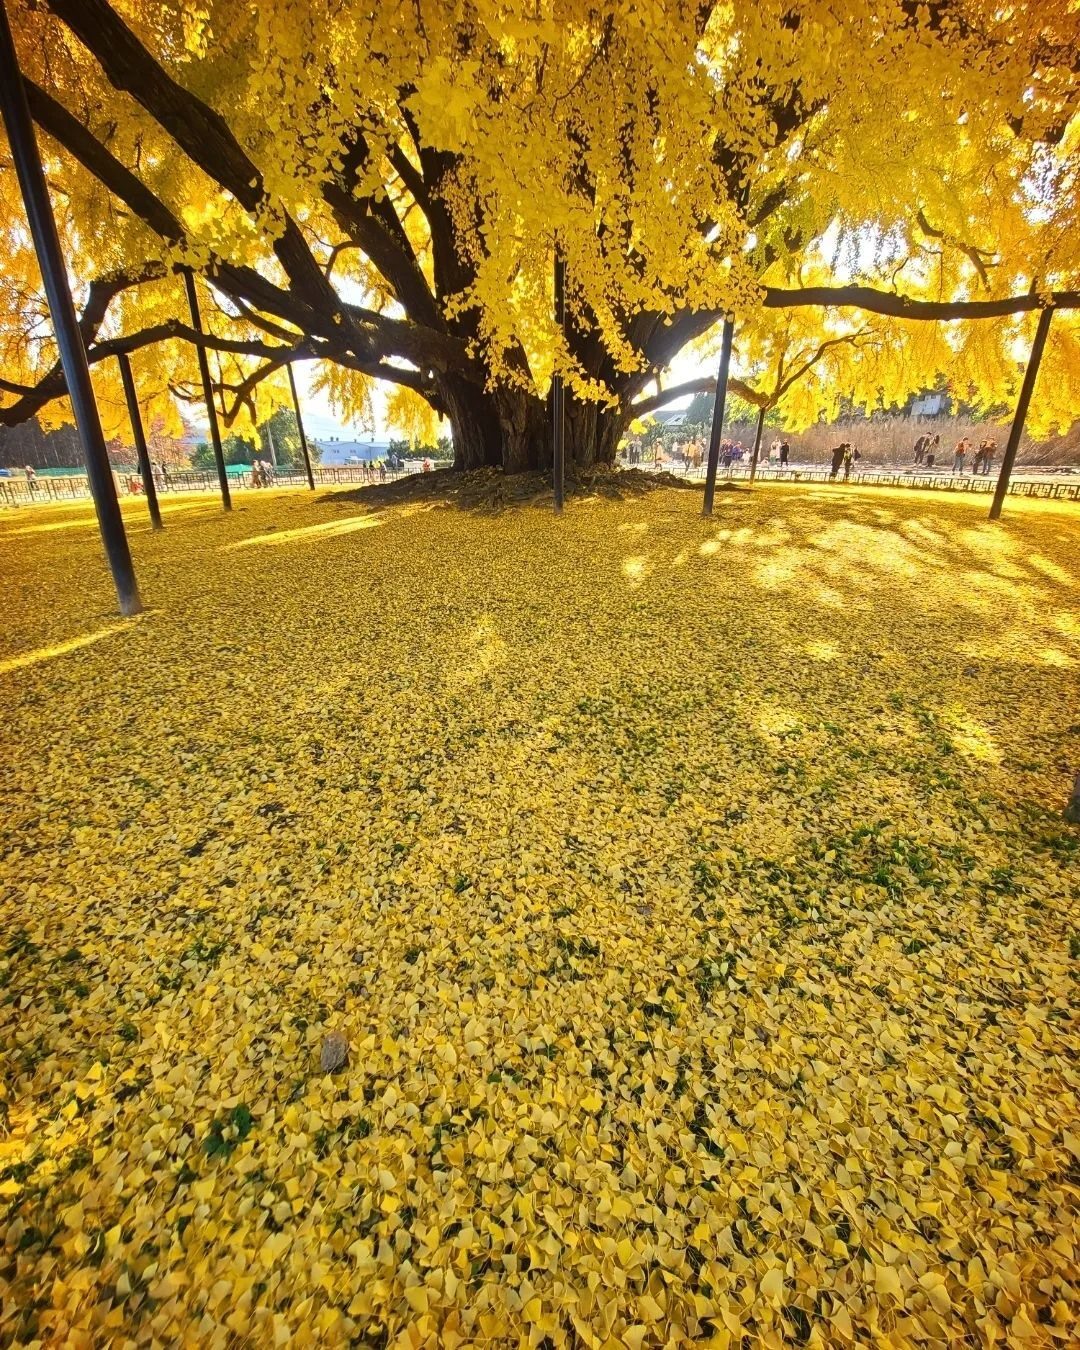 Cây vươn dài tạo nên bóng râm lớn, người ta phải chống đỡ bằng nhiều trụ cột để cành cây không bị rà xuống mặt đất, mỗi mùa lá vàng rụng ngợp một khoảng sân lớn nhìn từ xa như tấm thảng khổng lồ vàng rực rỡ.